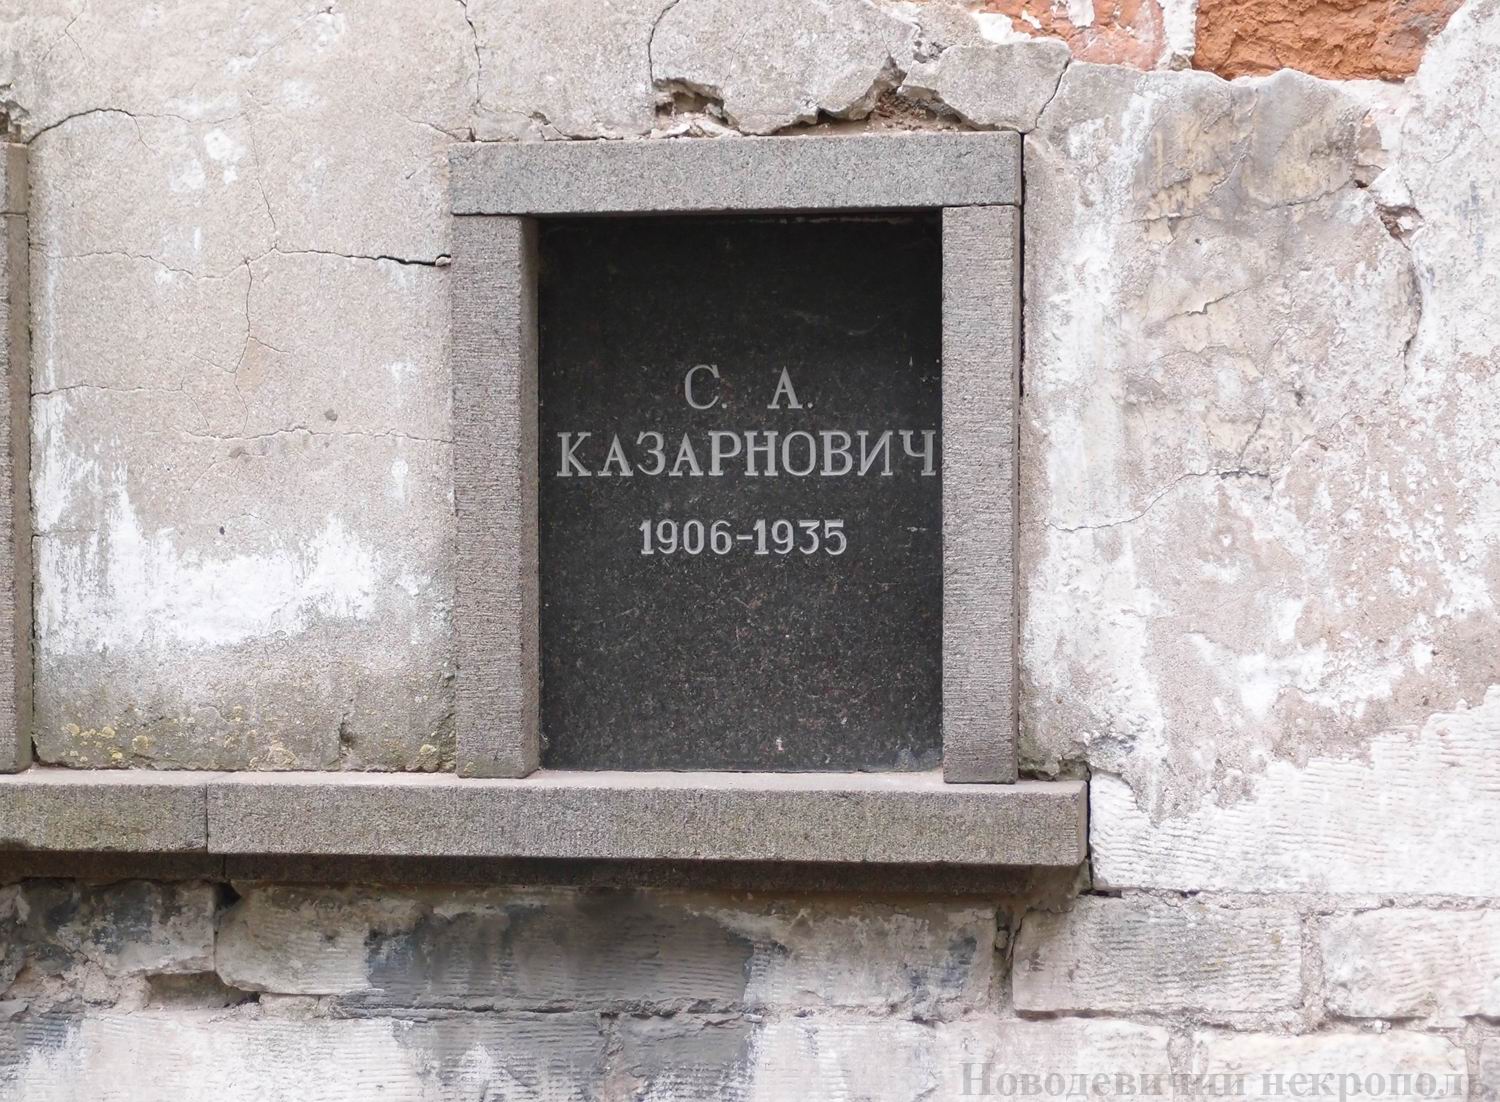 Плита на нише Казарновича С.А. (1906-1935), на Новодевичьем кладбище (колумбарий [3]-43). Нажмите левую кнопку мыши, чтобы увидеть общий вид секции.